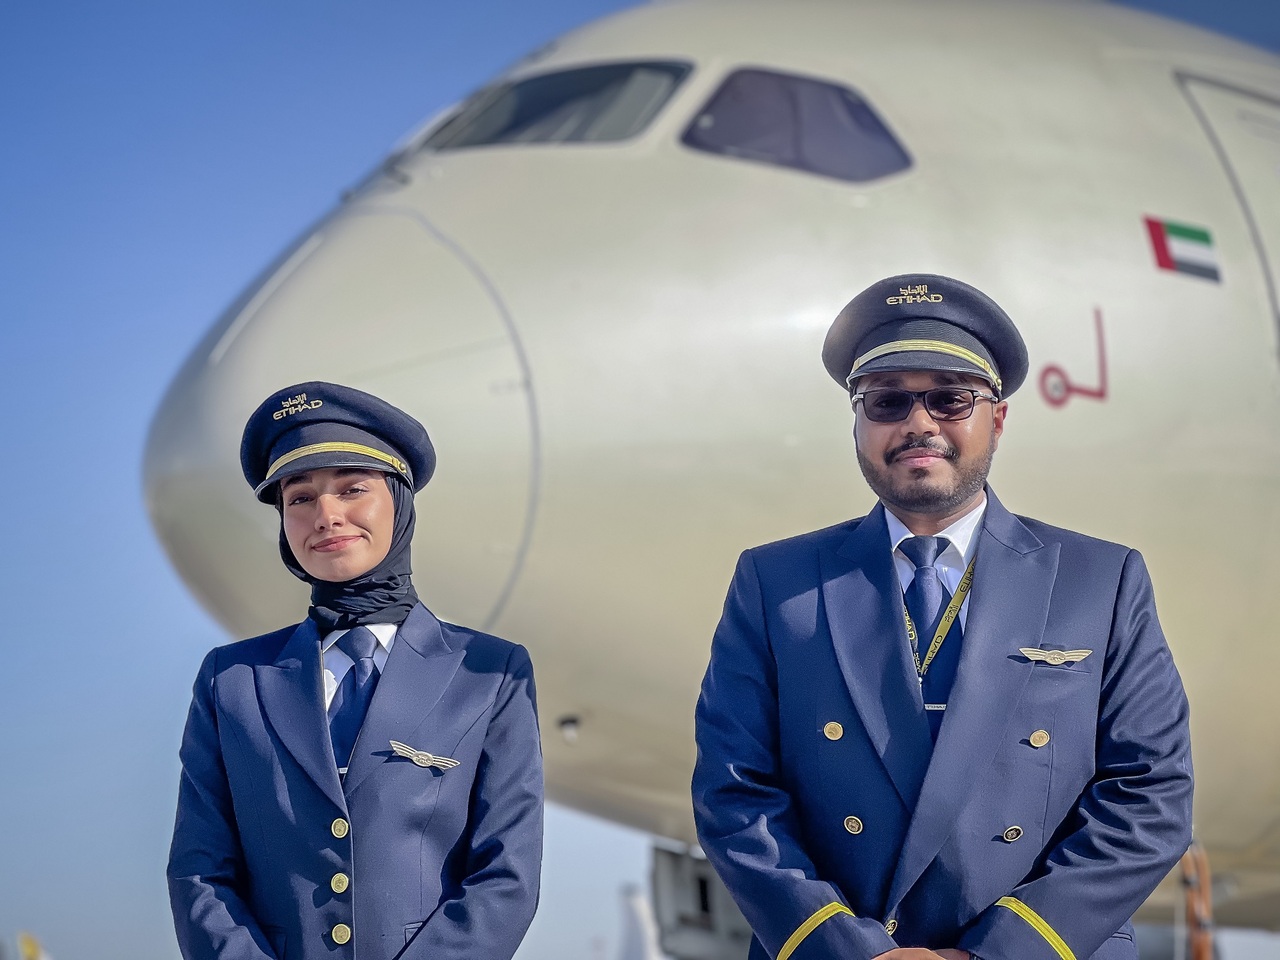 Etihad Airways cadet pilots pose in front of Etihad aircraft.